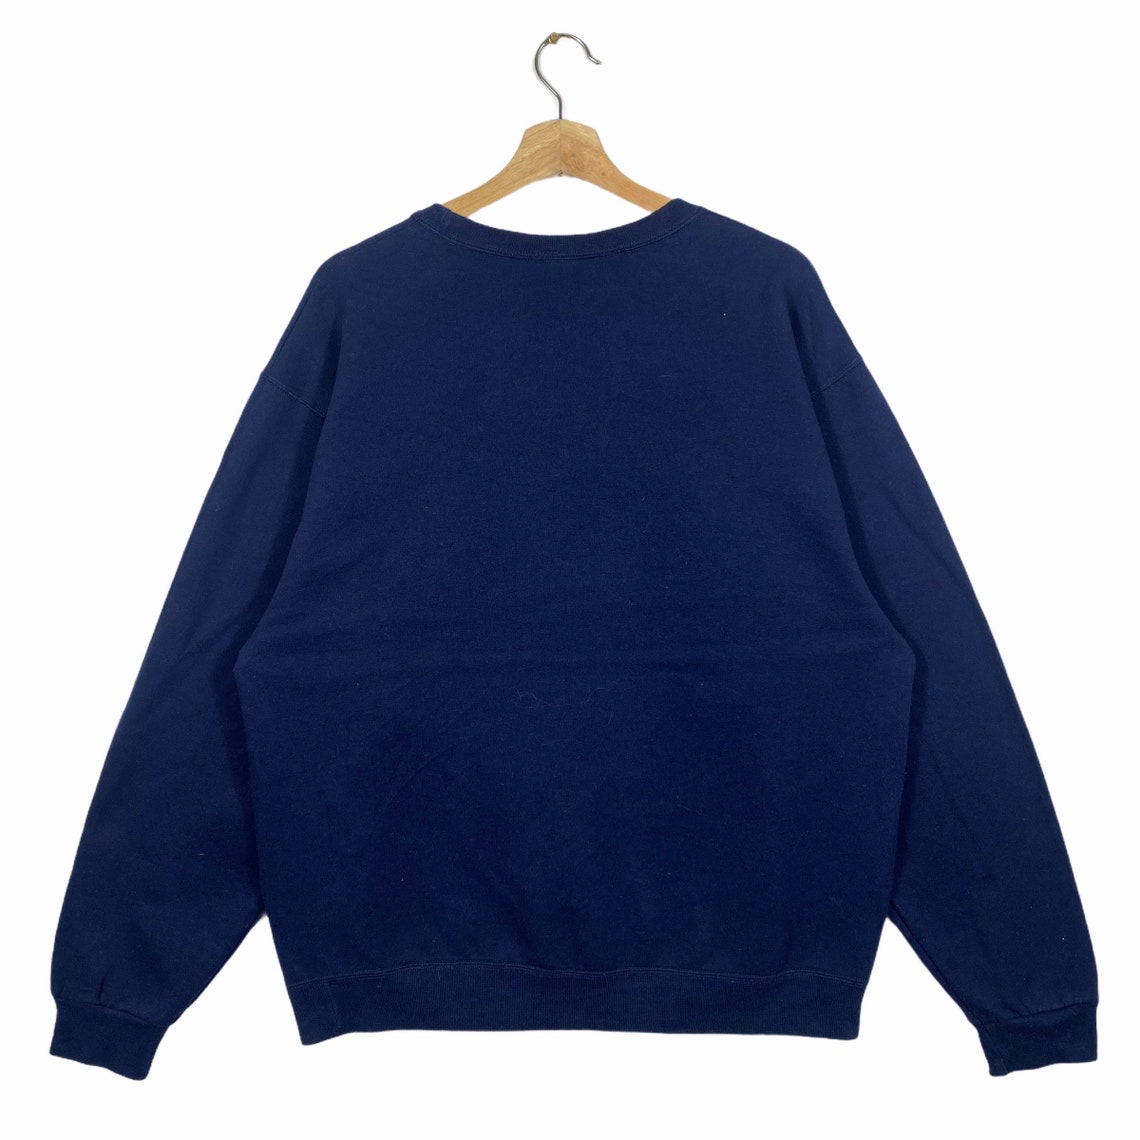 Vintage New Hampshire Embroidery Sweatshirt L Size Navyblue - Etsy UK